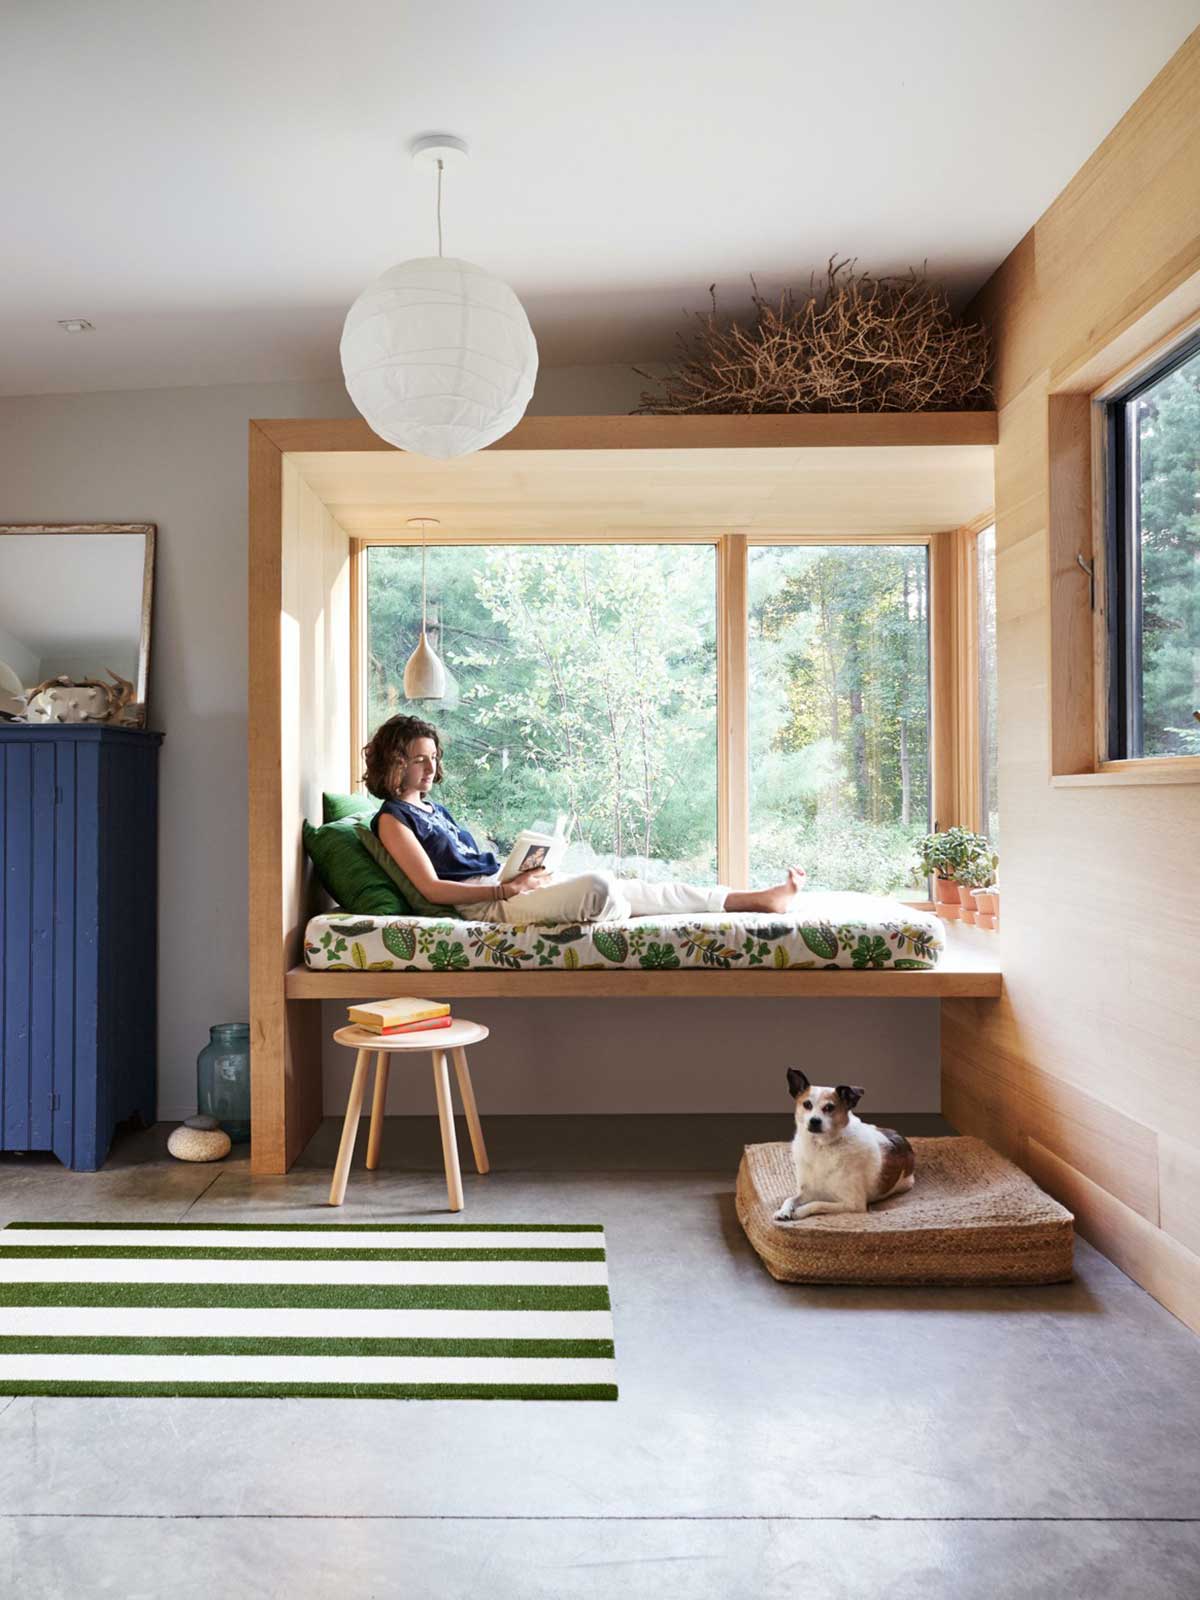 Bục ngồi cạnh cửa sổ cho những phút giây thư giãn. Nguồn: home-designing.com